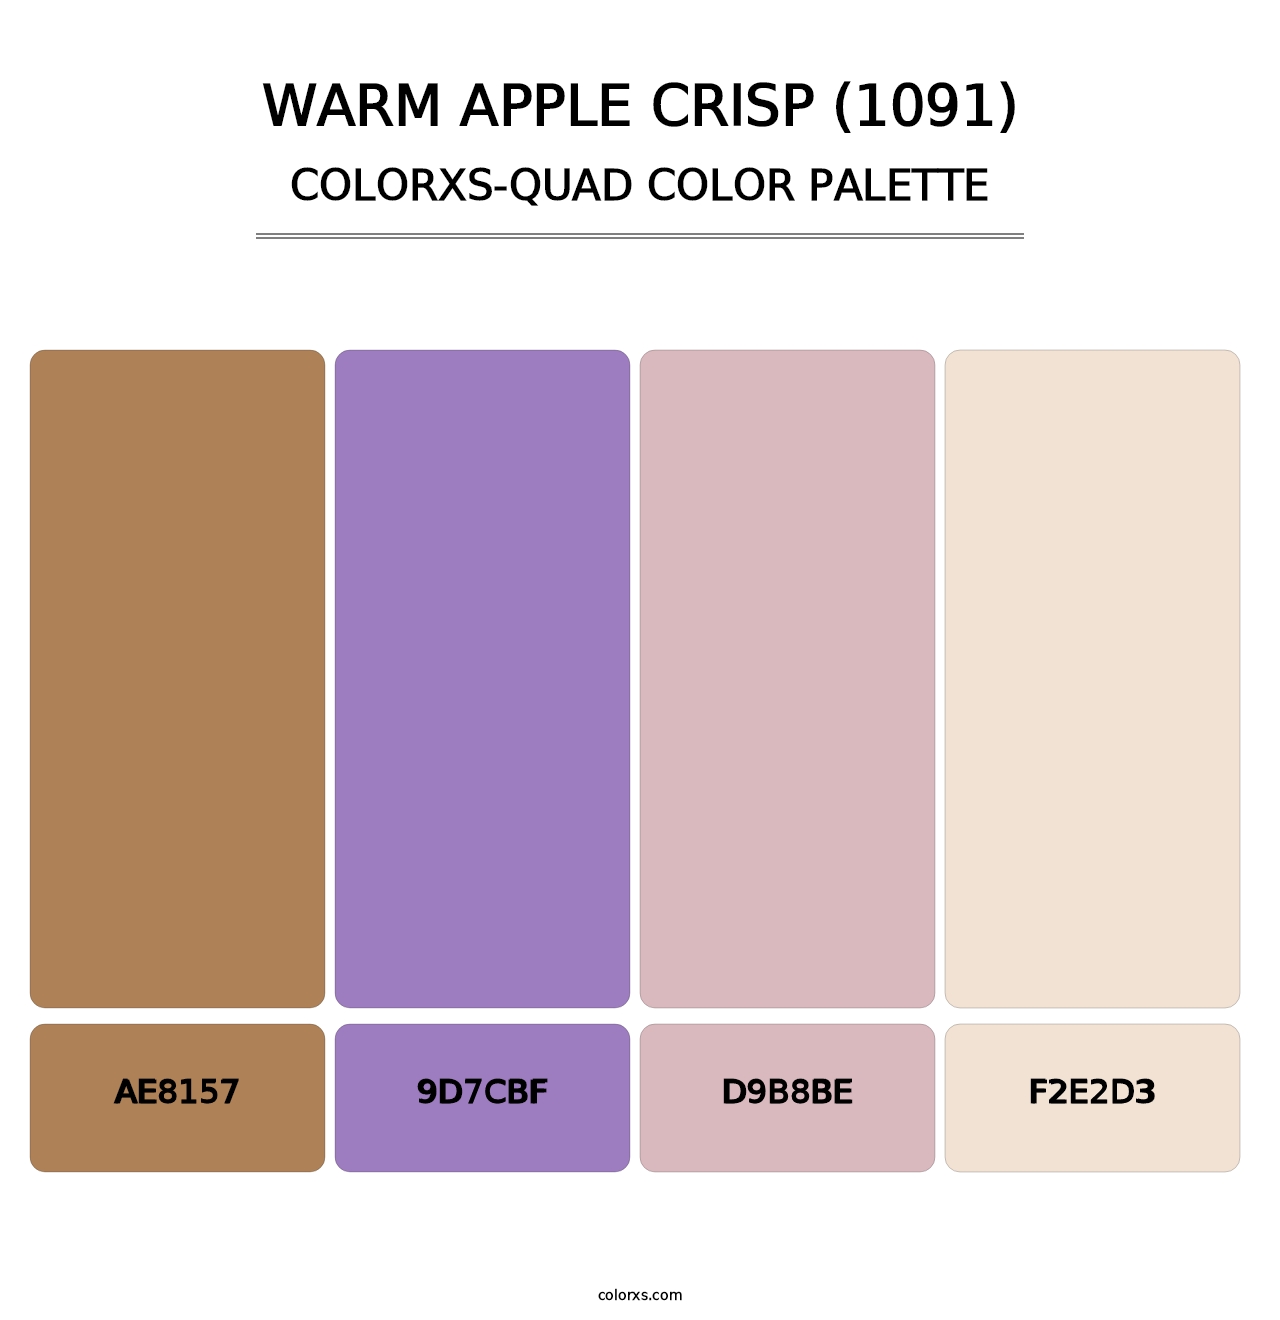 Warm Apple Crisp (1091) - Colorxs Quad Palette